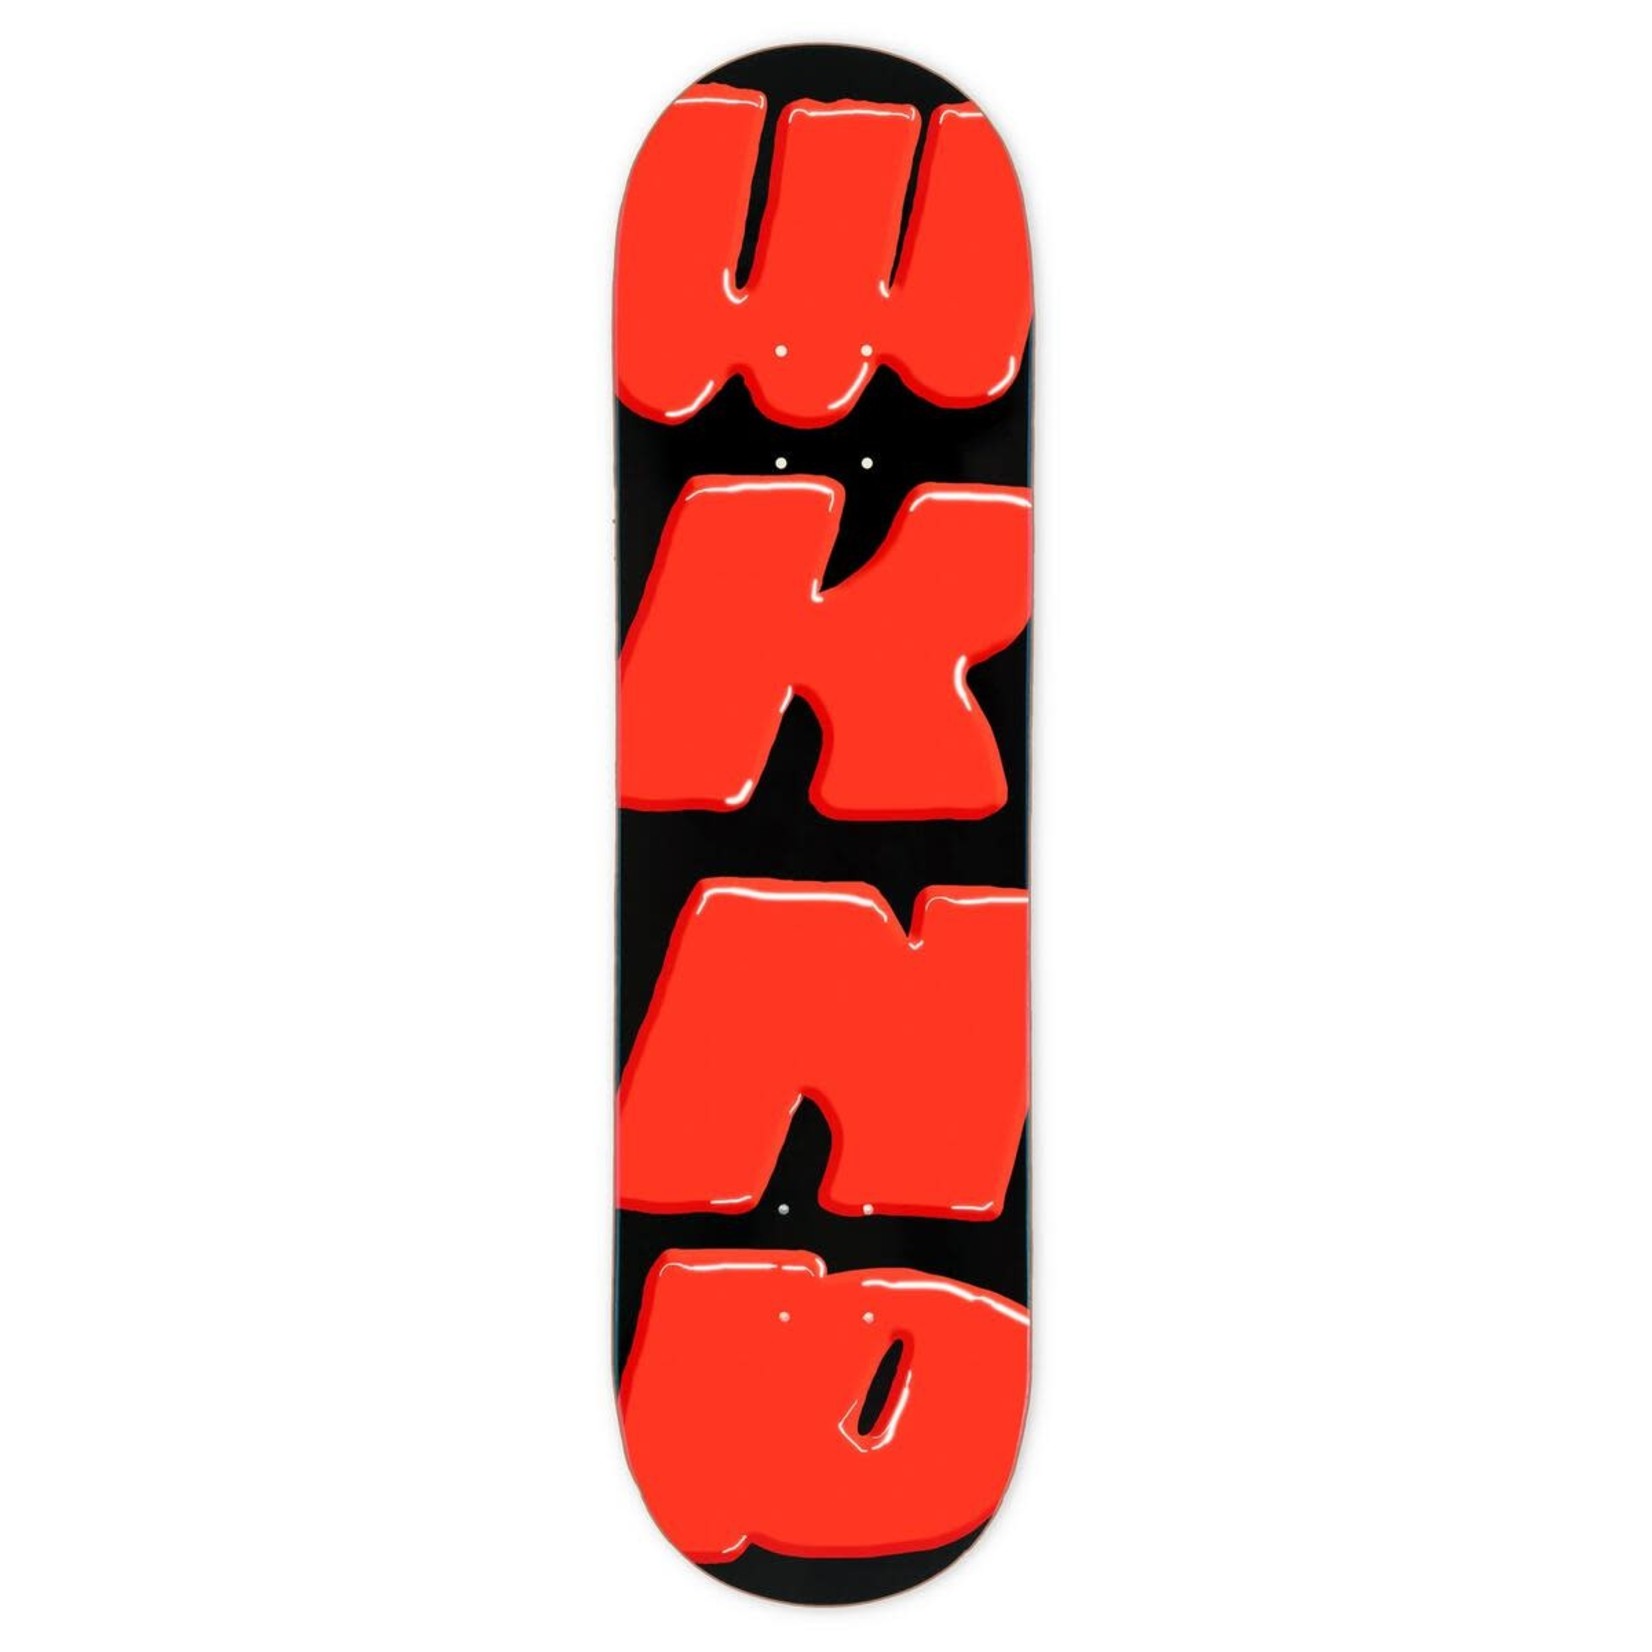 WKND WKND Look Out WKND Skateboard Deck -